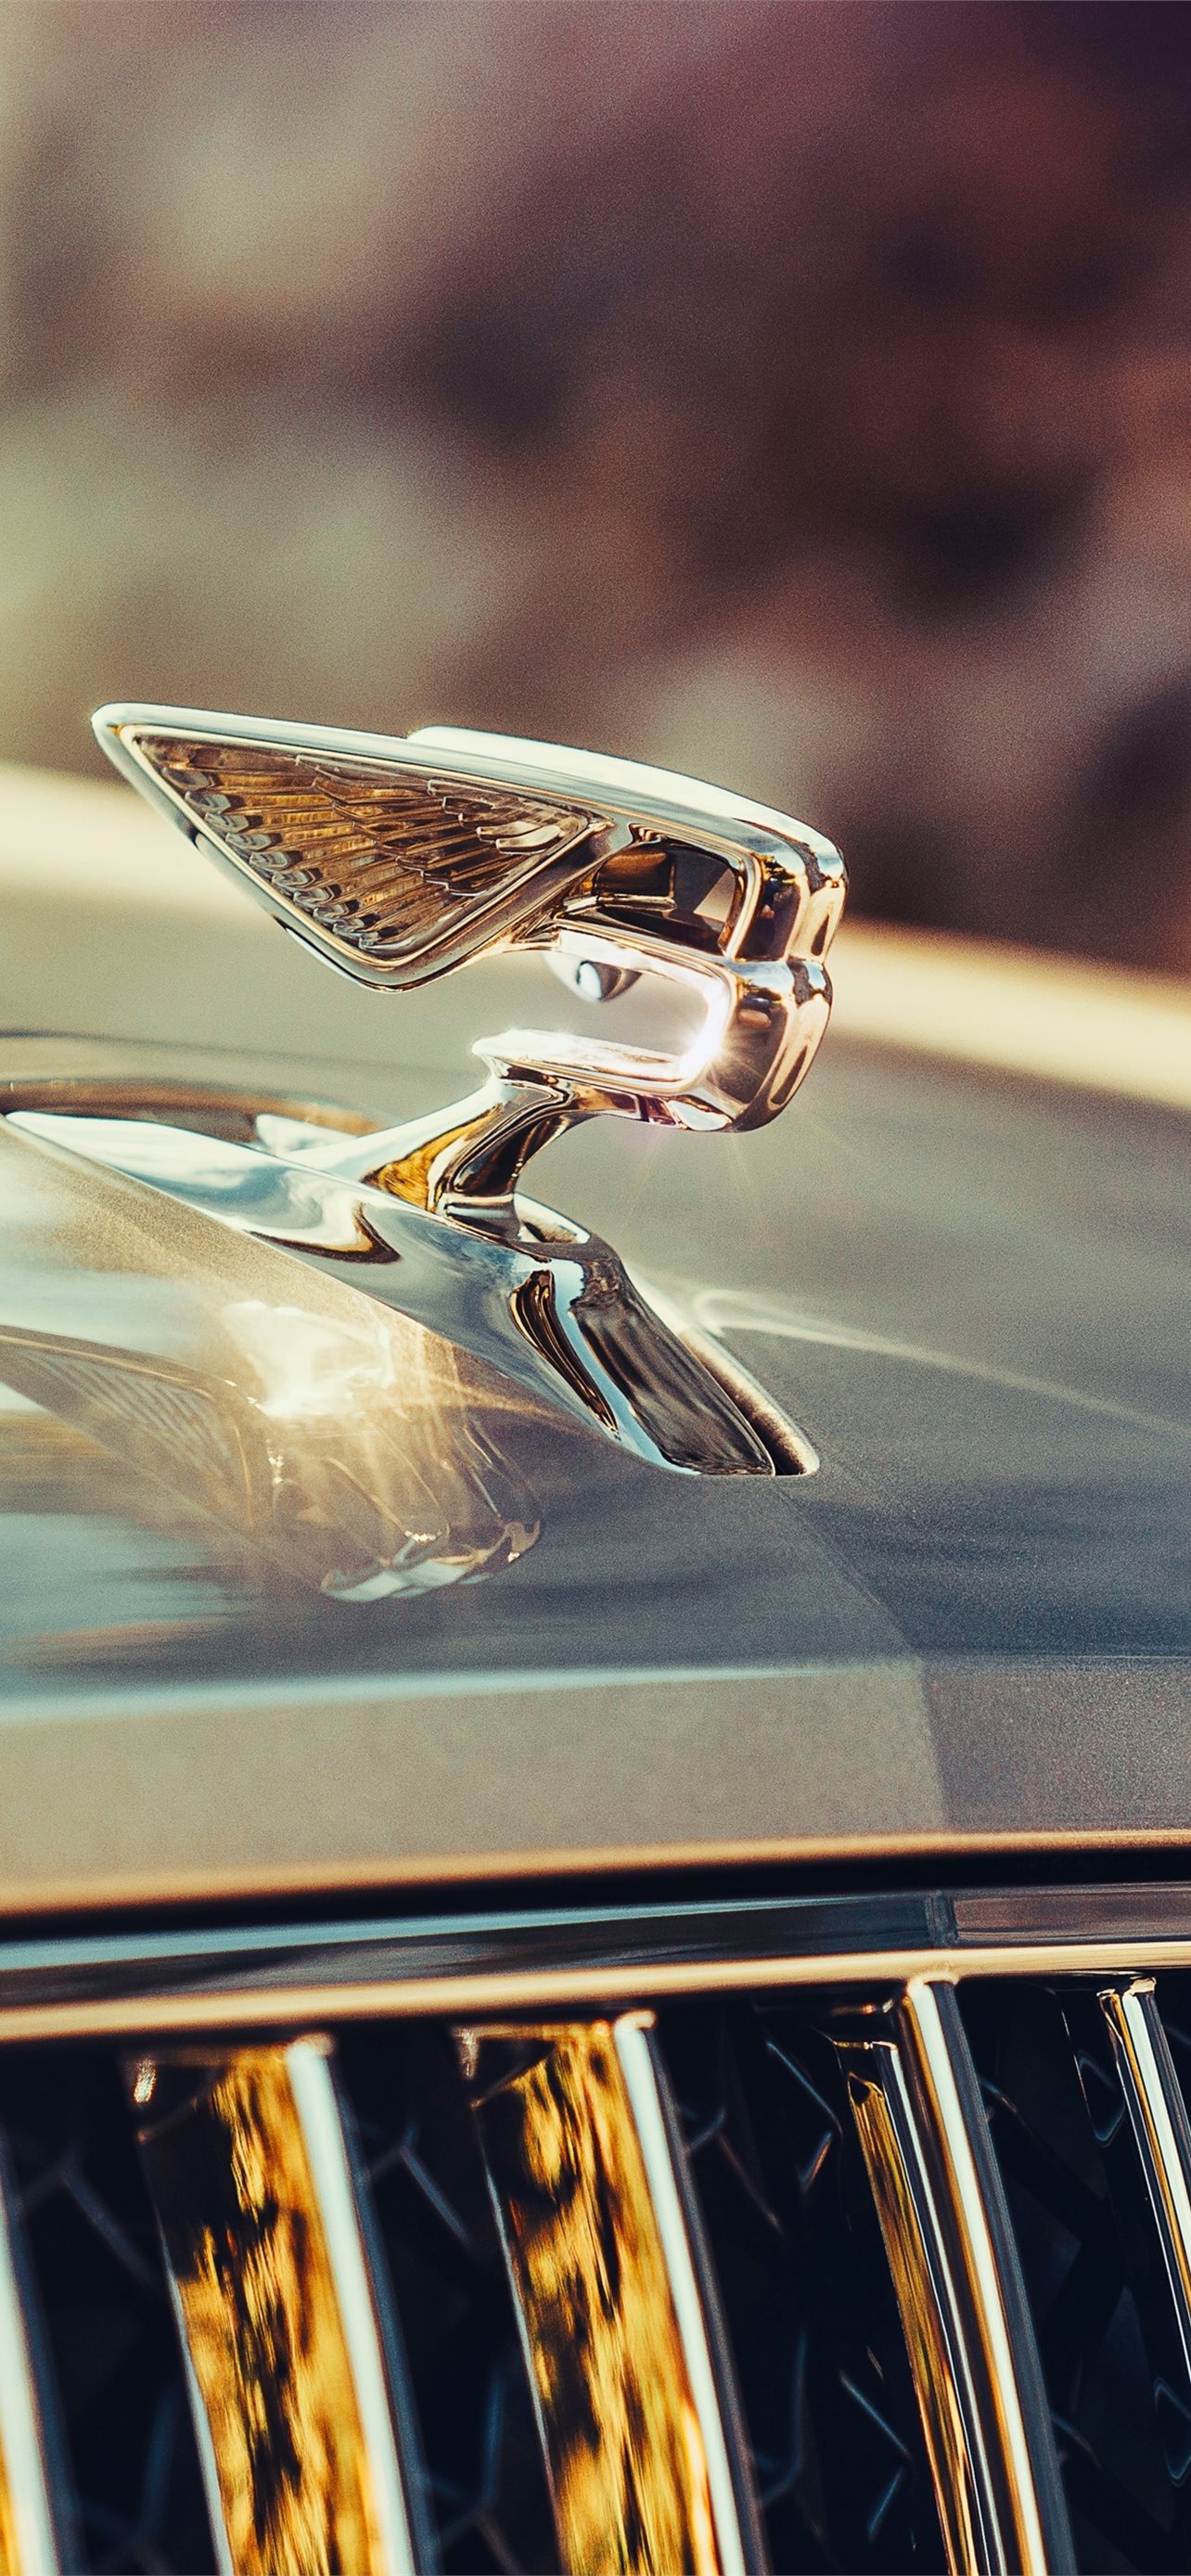 Thưởng thức đẳng cấp và sang trọng với hình nền Bentley đầy ấn tượng. Hình ảnh này sẽ khiến bạn liên tưởng đến sự hoành tráng của những chiếc xe từ nhà sản xuất U.K nổi tiếng này.